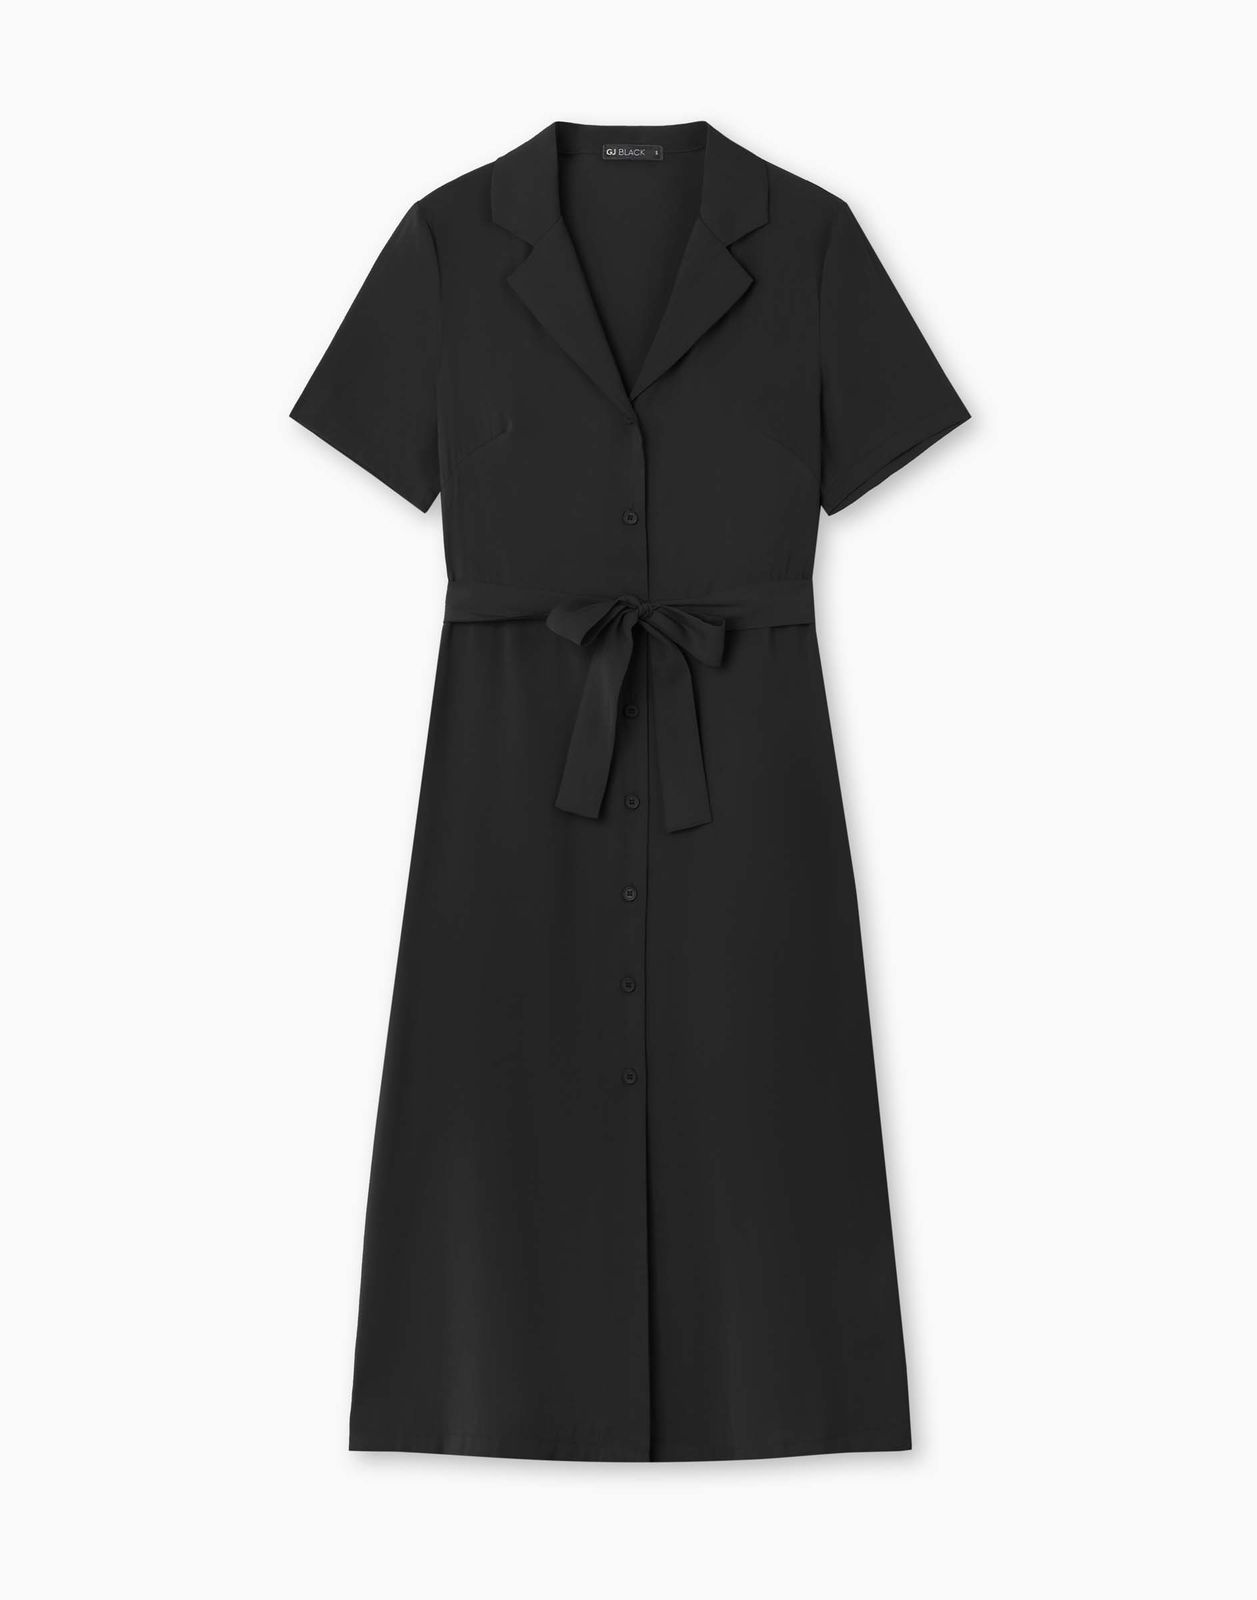 Платье женское Gloria Jeans GDR028322 черный L/170